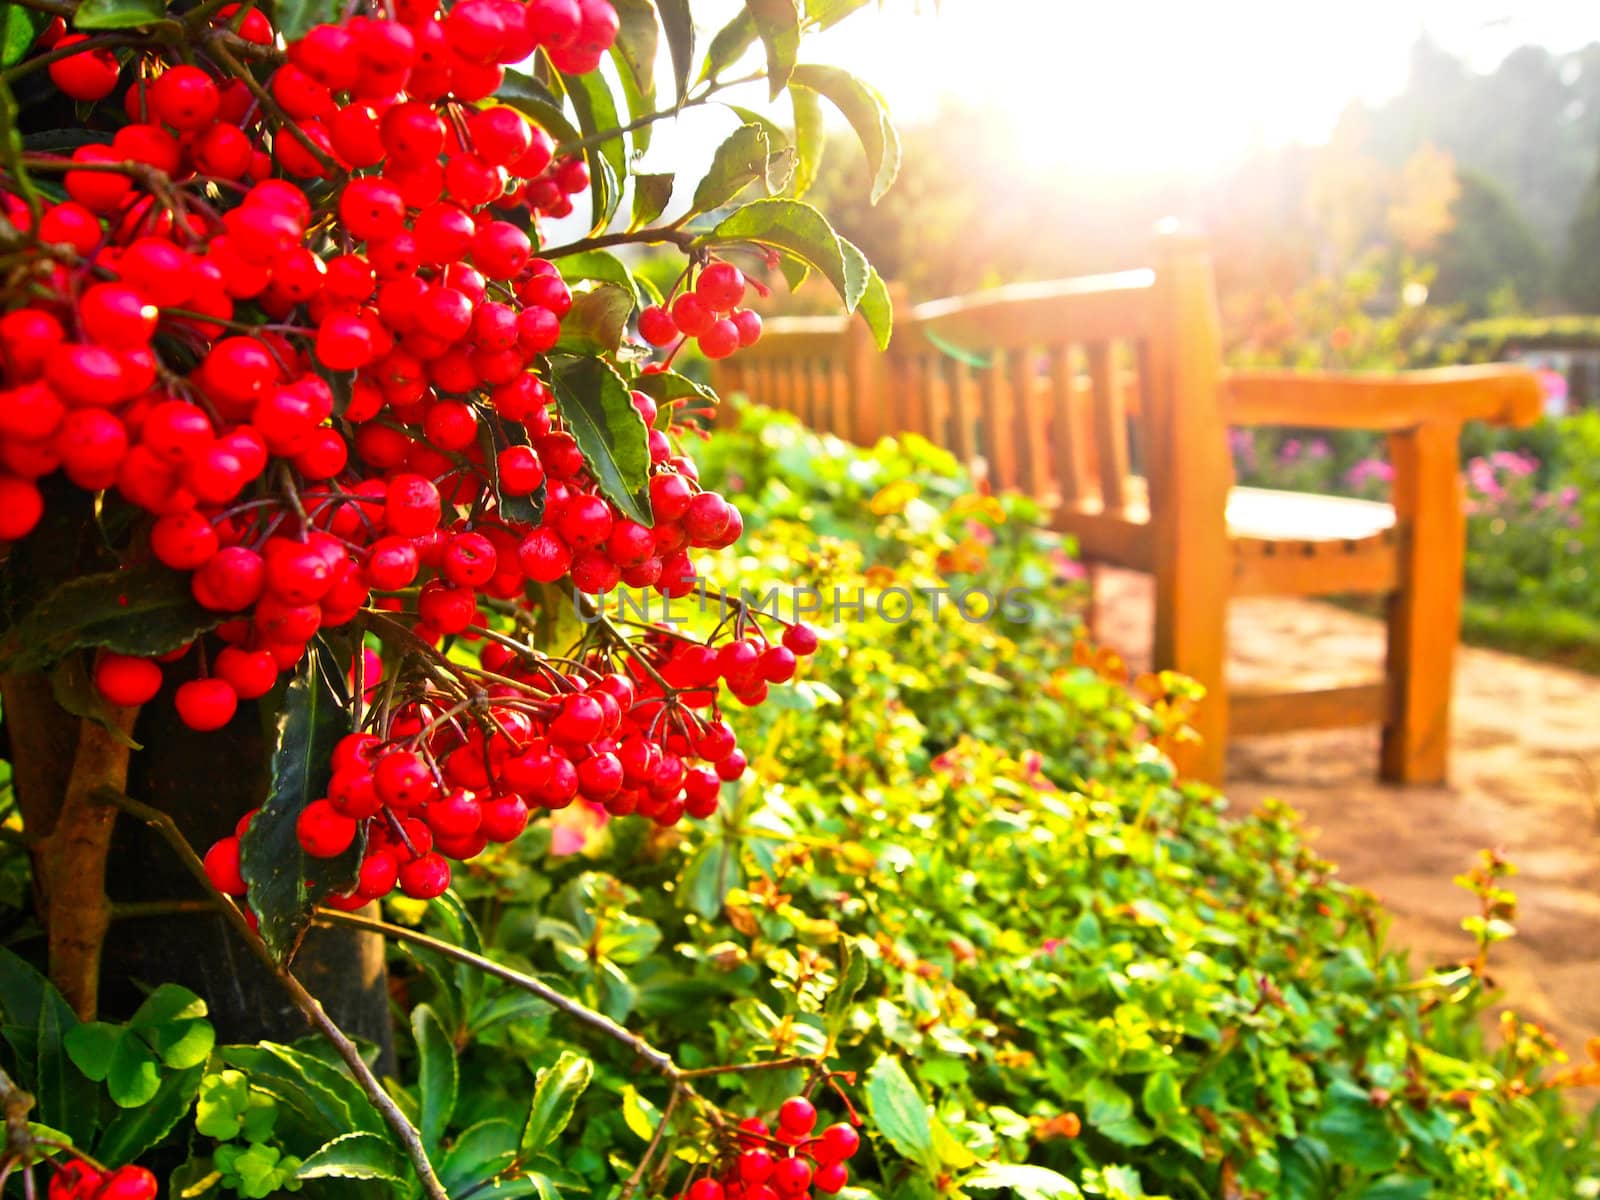 Red fruit in garden